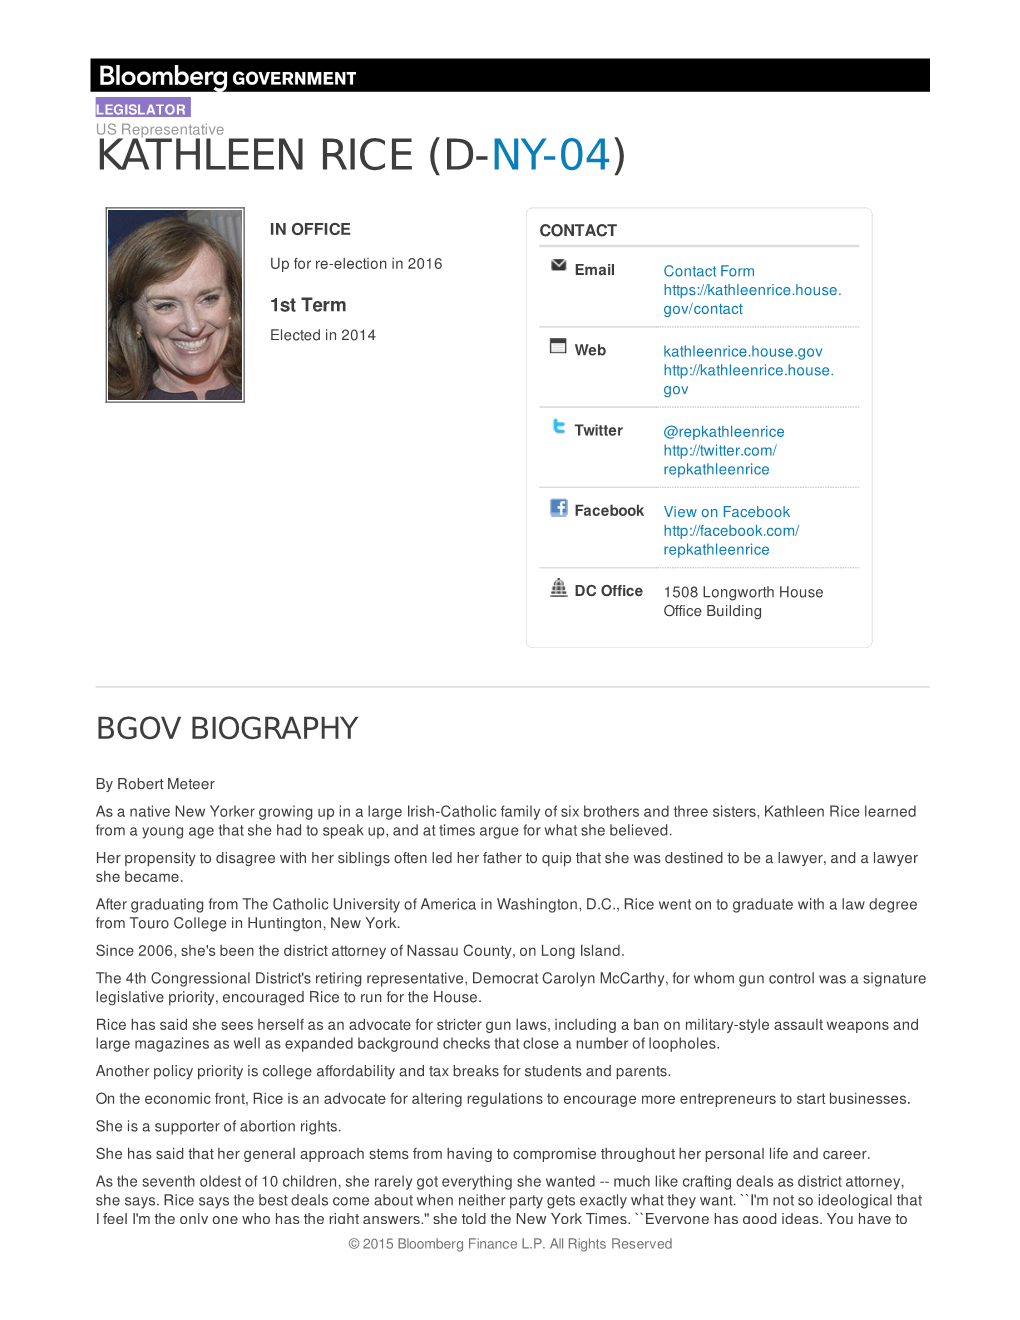 Kathleen Rice (D-Ny-04)